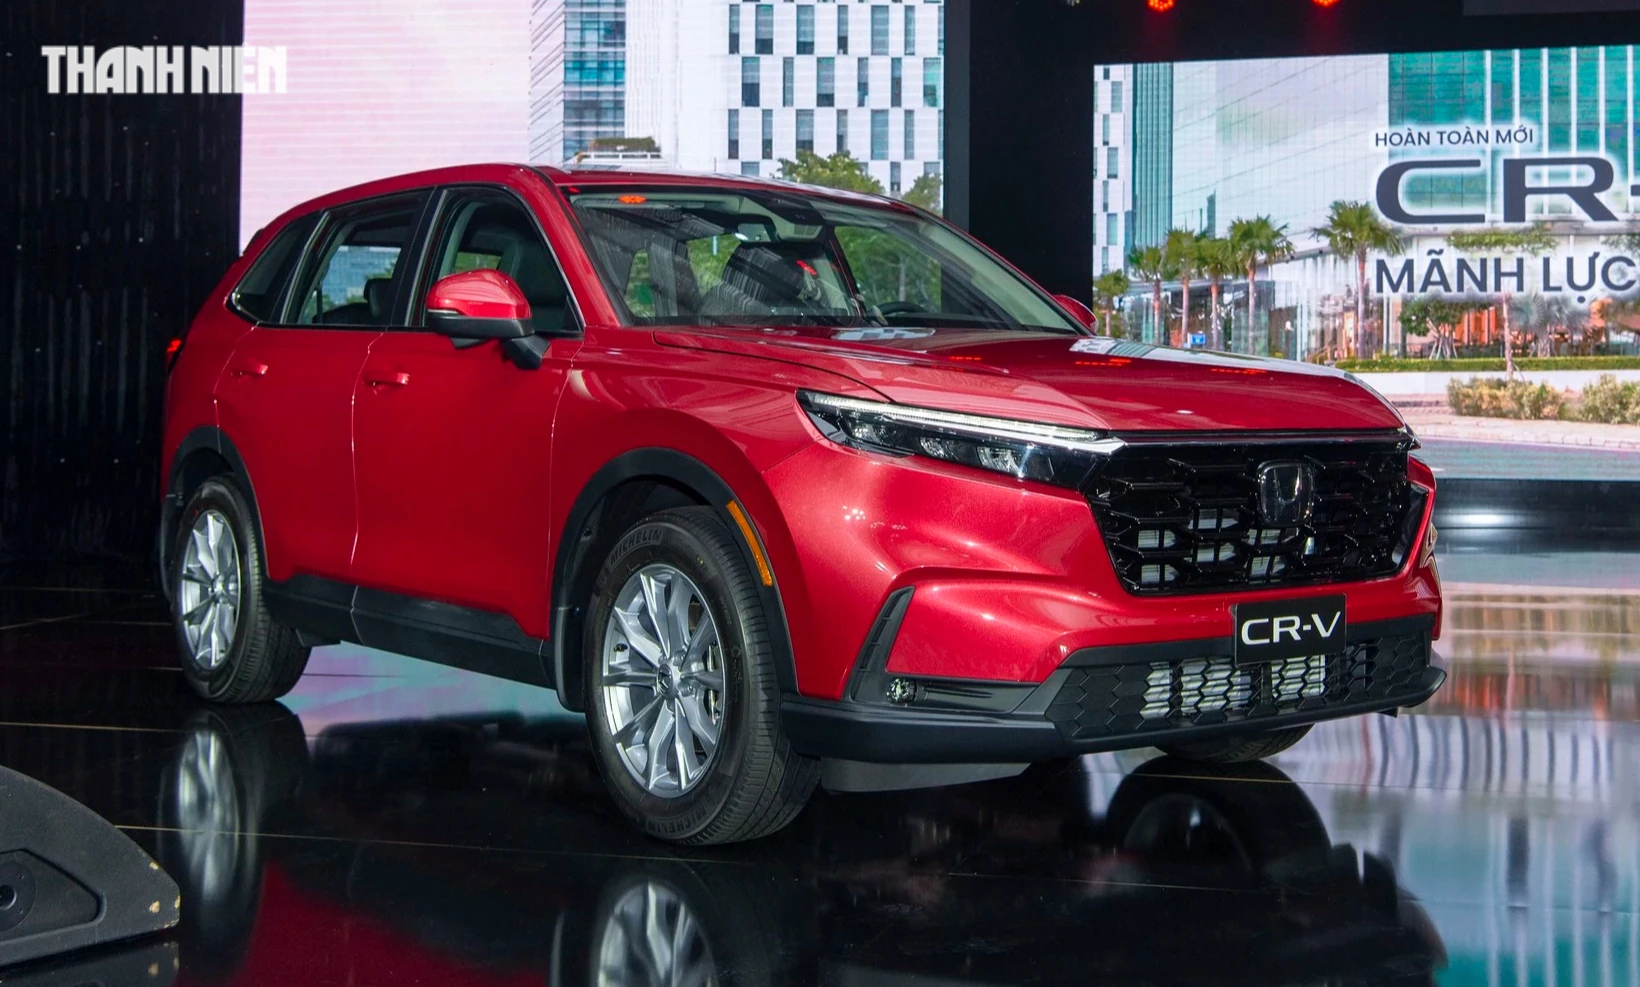 Honda CR-V thế hệ mới tại Việt Nam có 4 phiên bản, giá từ 1,109 đồng - Ảnh 1.